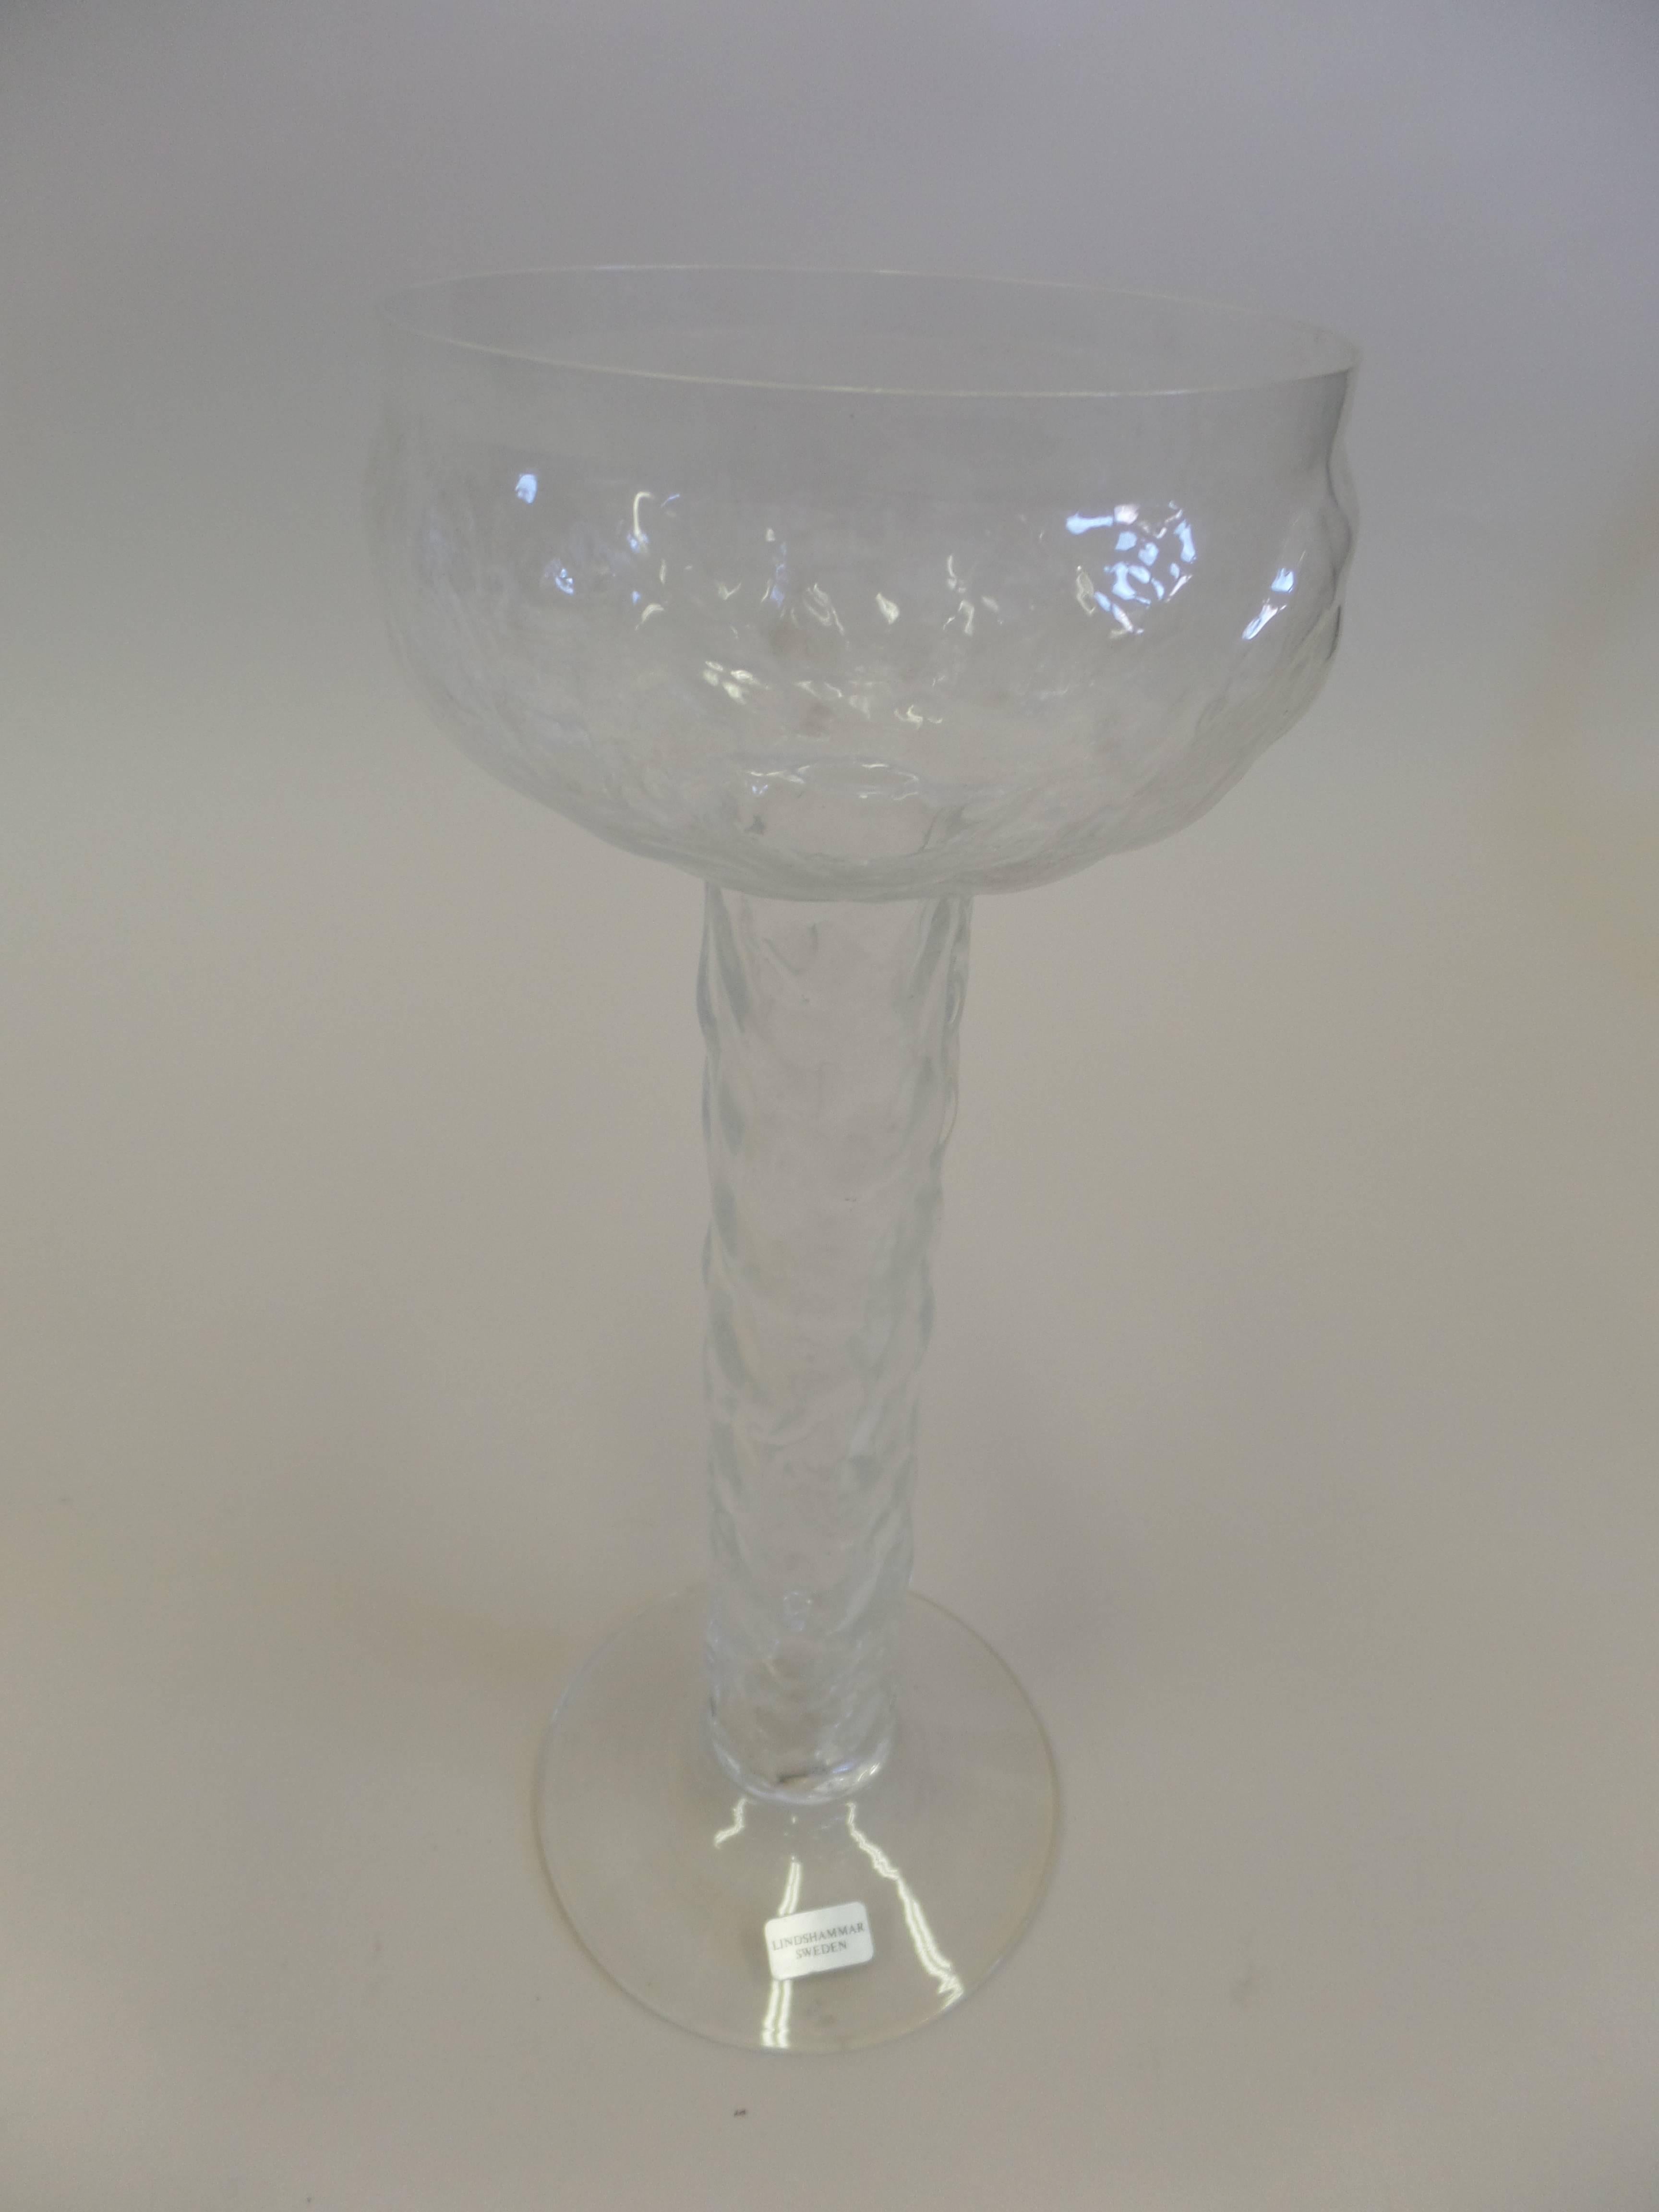 Vase à bourgeons soufflé à la main par Lindshammar en utilisant la technique du verre glacé. La bougie peut être placée à l'intérieur pour former un candélabre.

Labellisé ; Lindshammar sur la base.